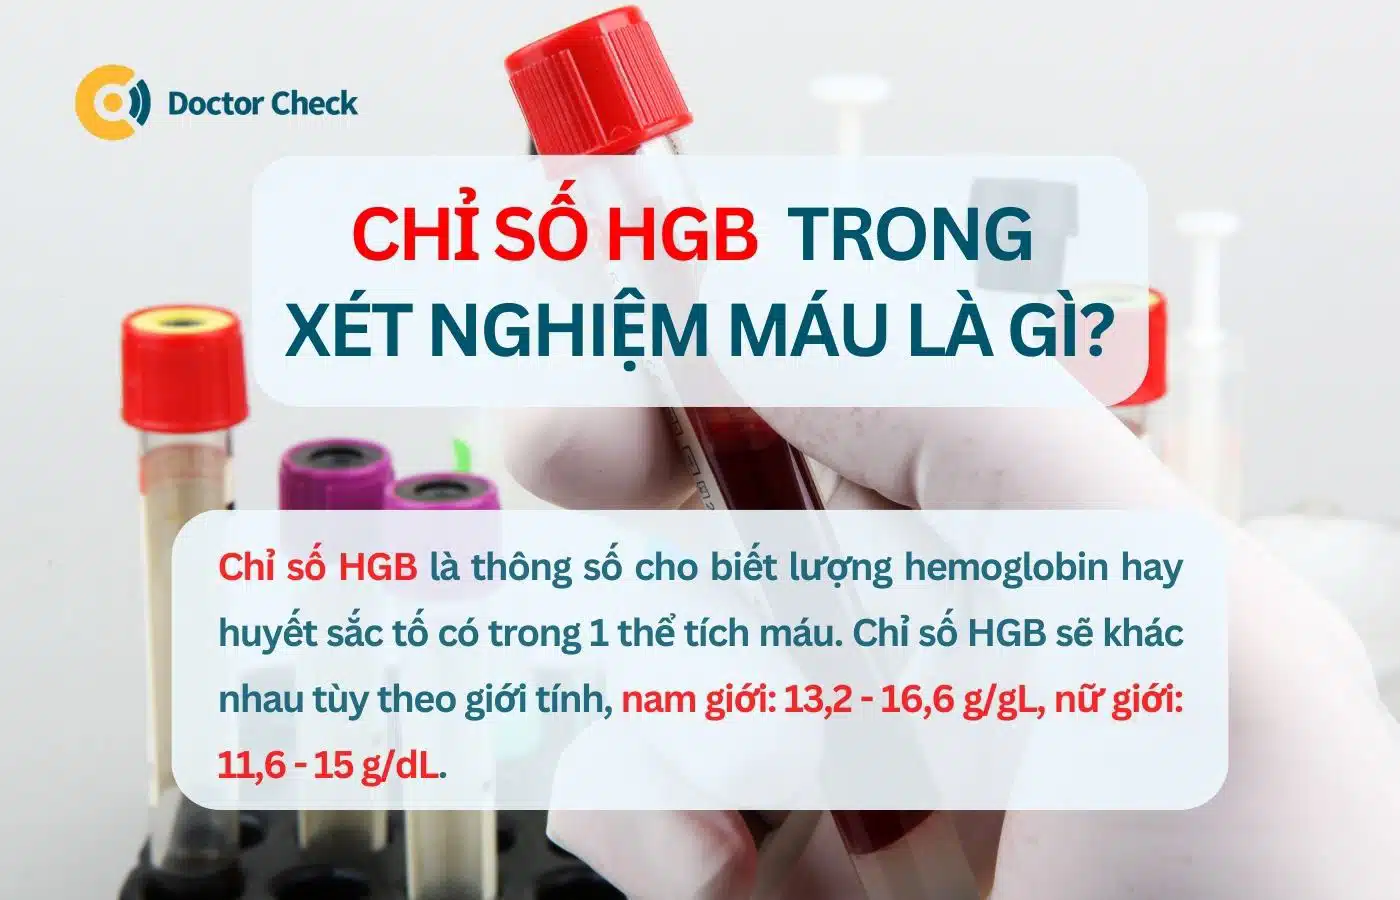 Chỉ số HGB trong xét nghiệm máu là gì?